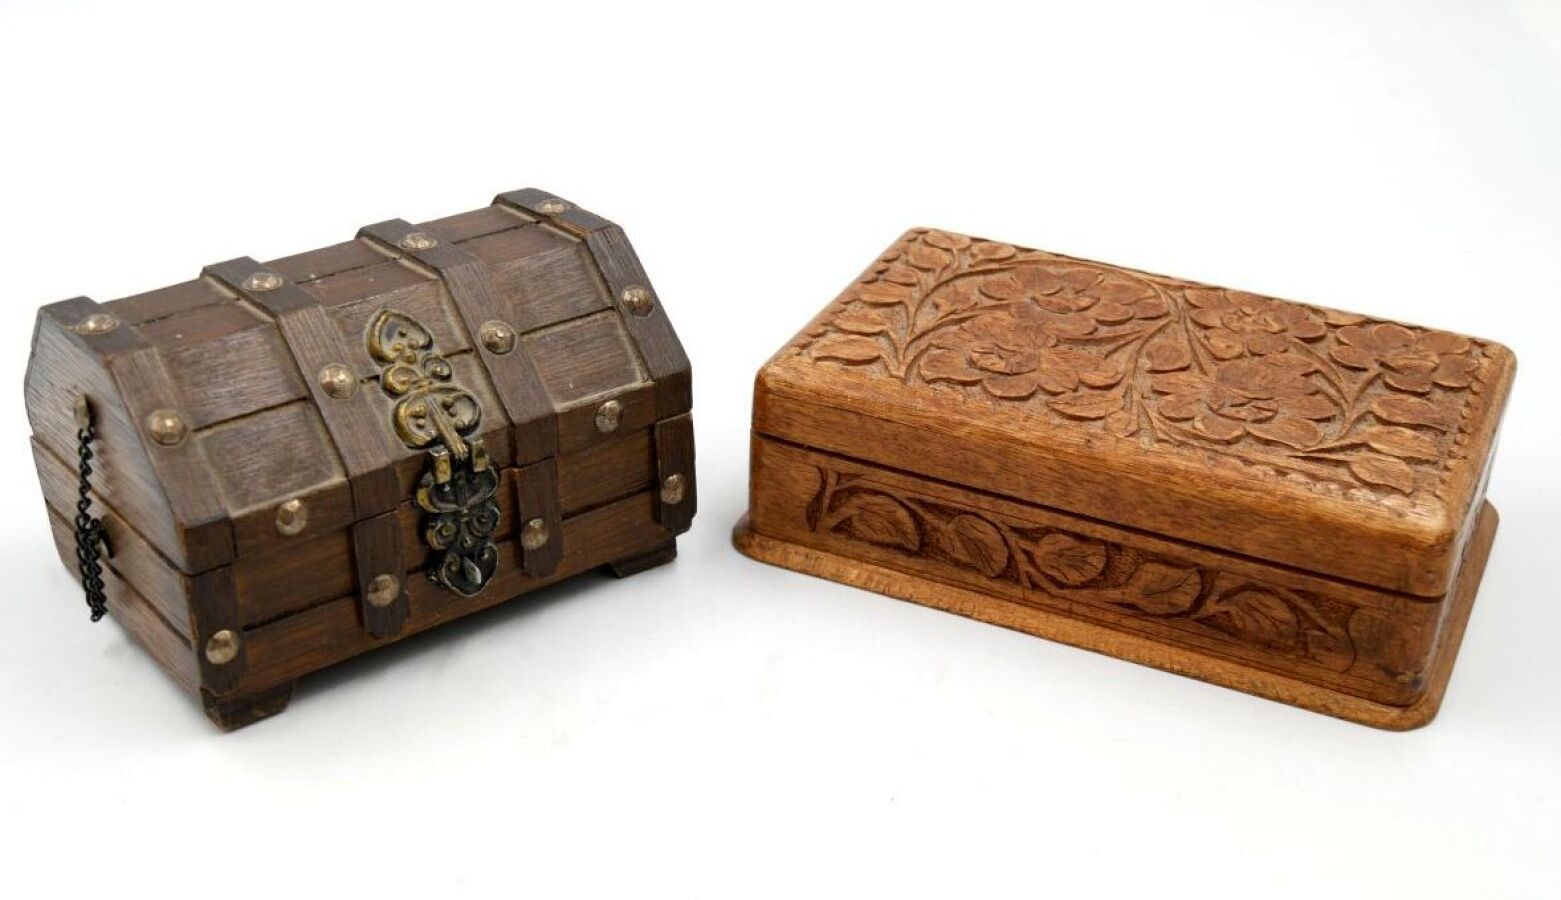 Null Juego de dos cajas: 

- caja de madera natural tallada con decoración de fl&hellip;